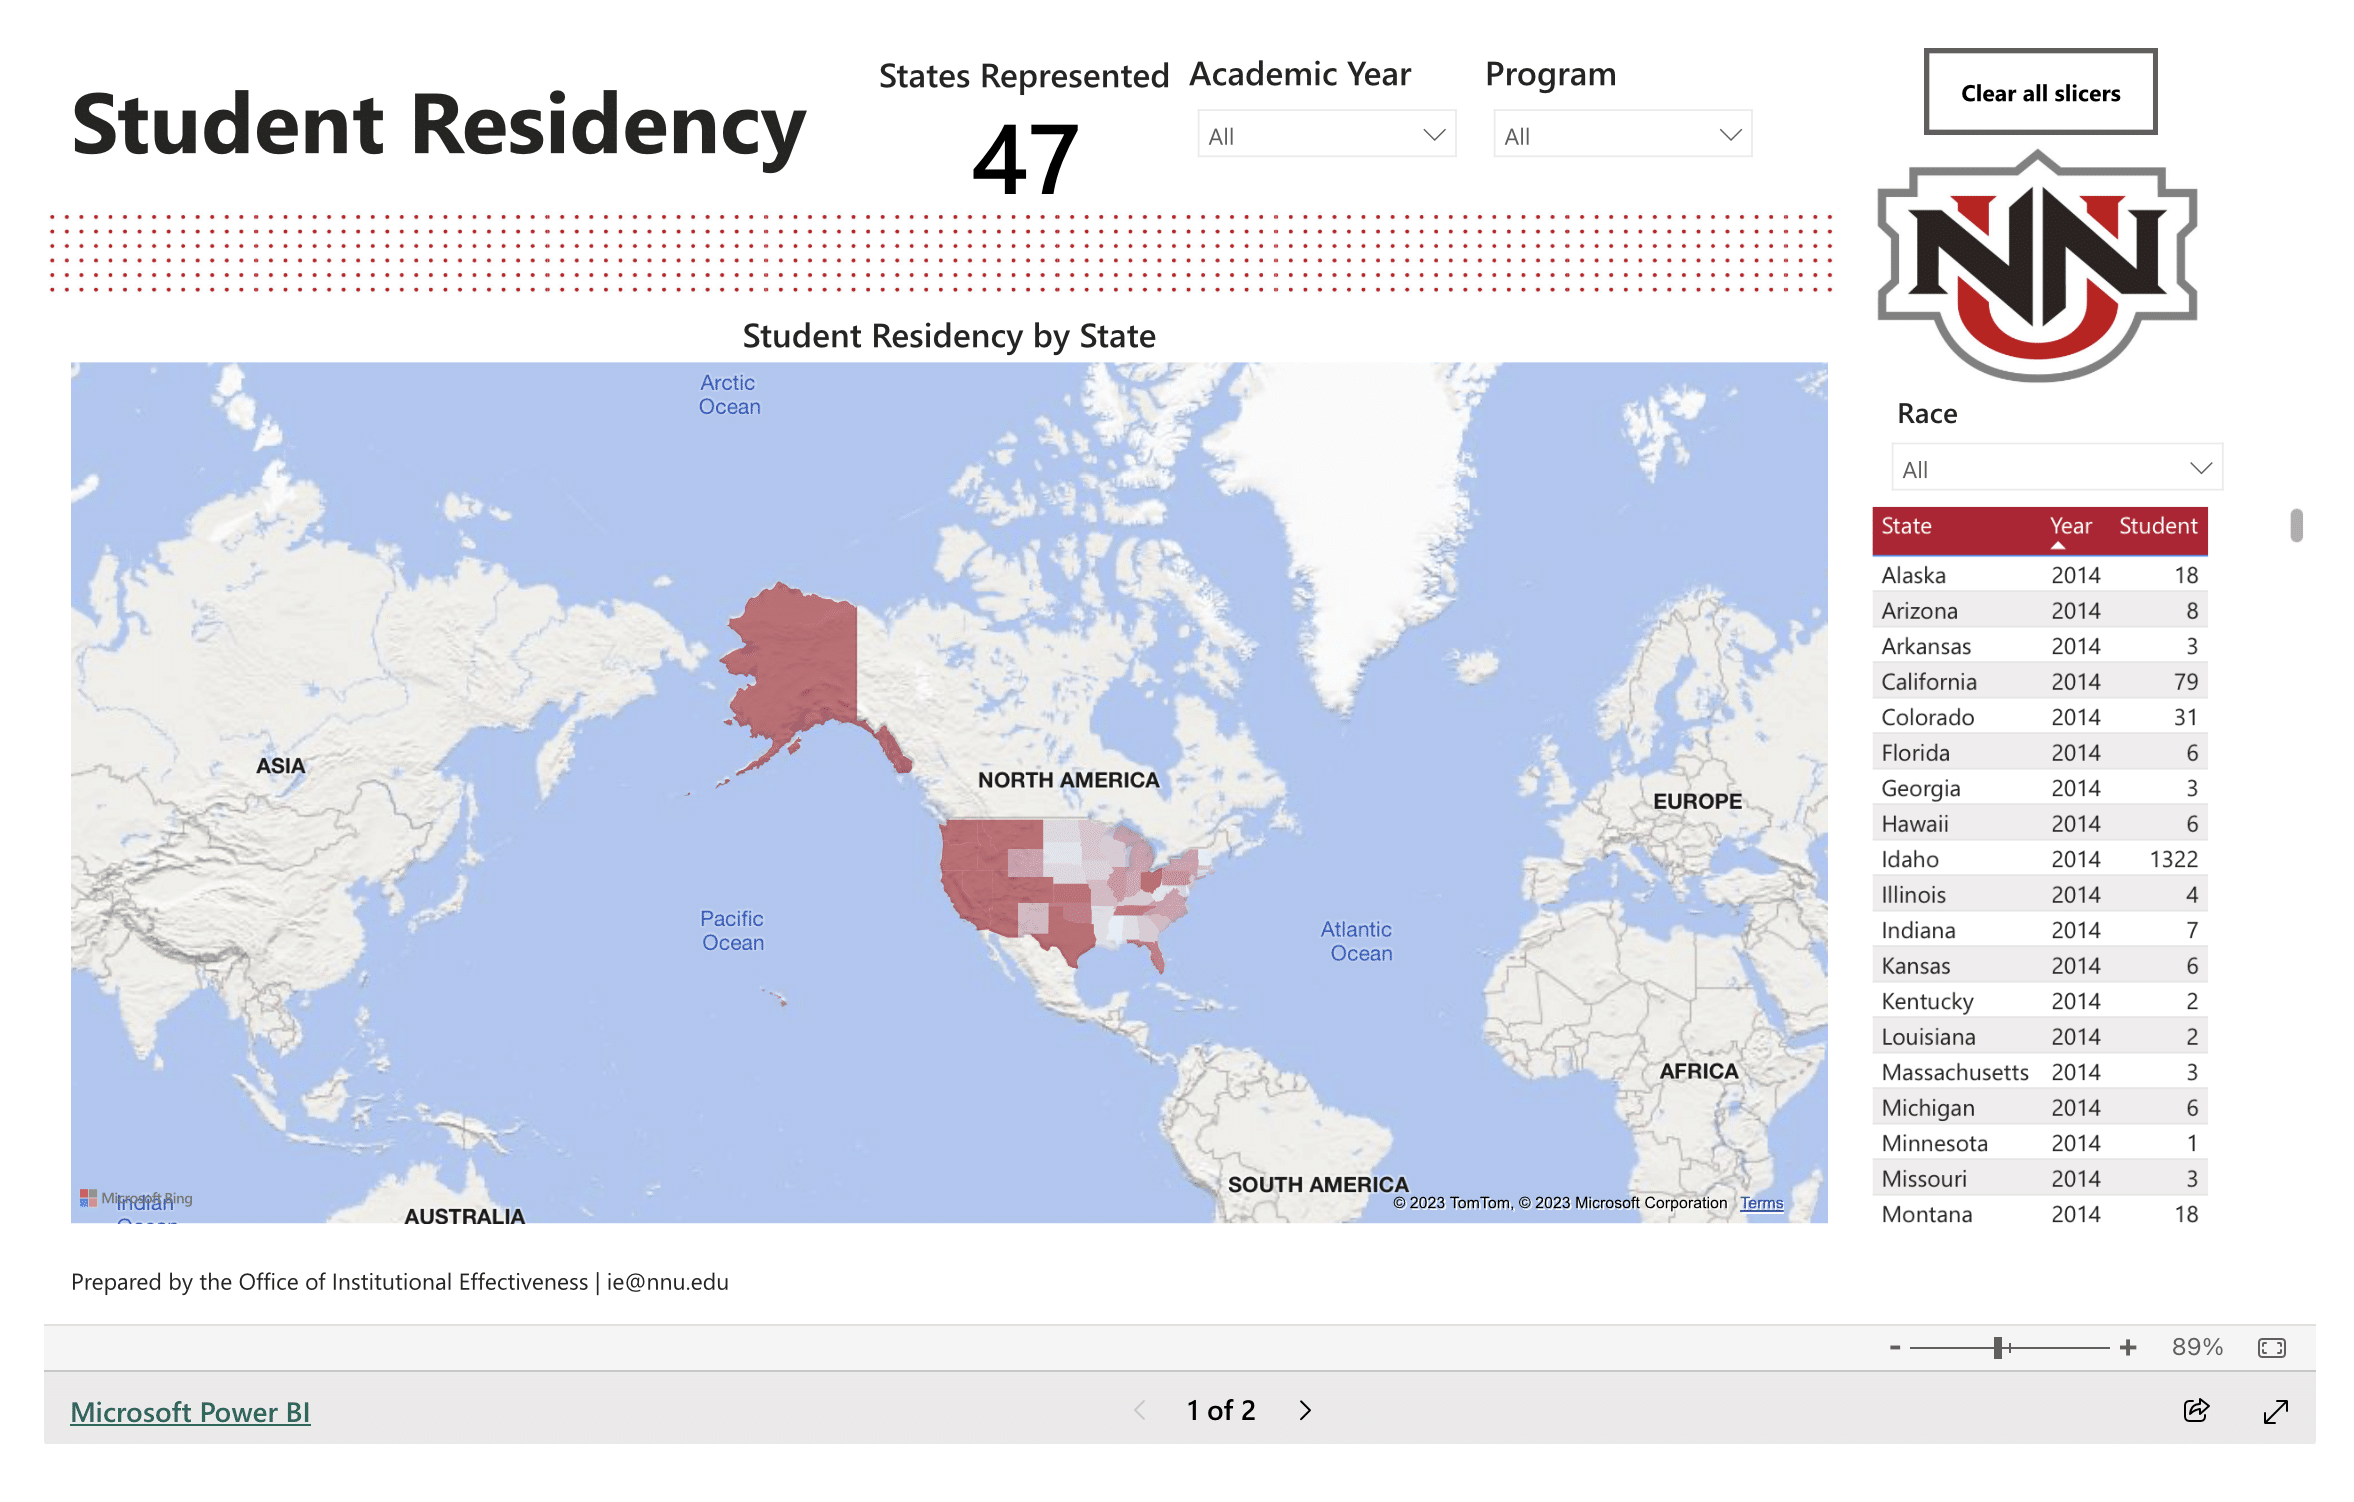 Student Residency data